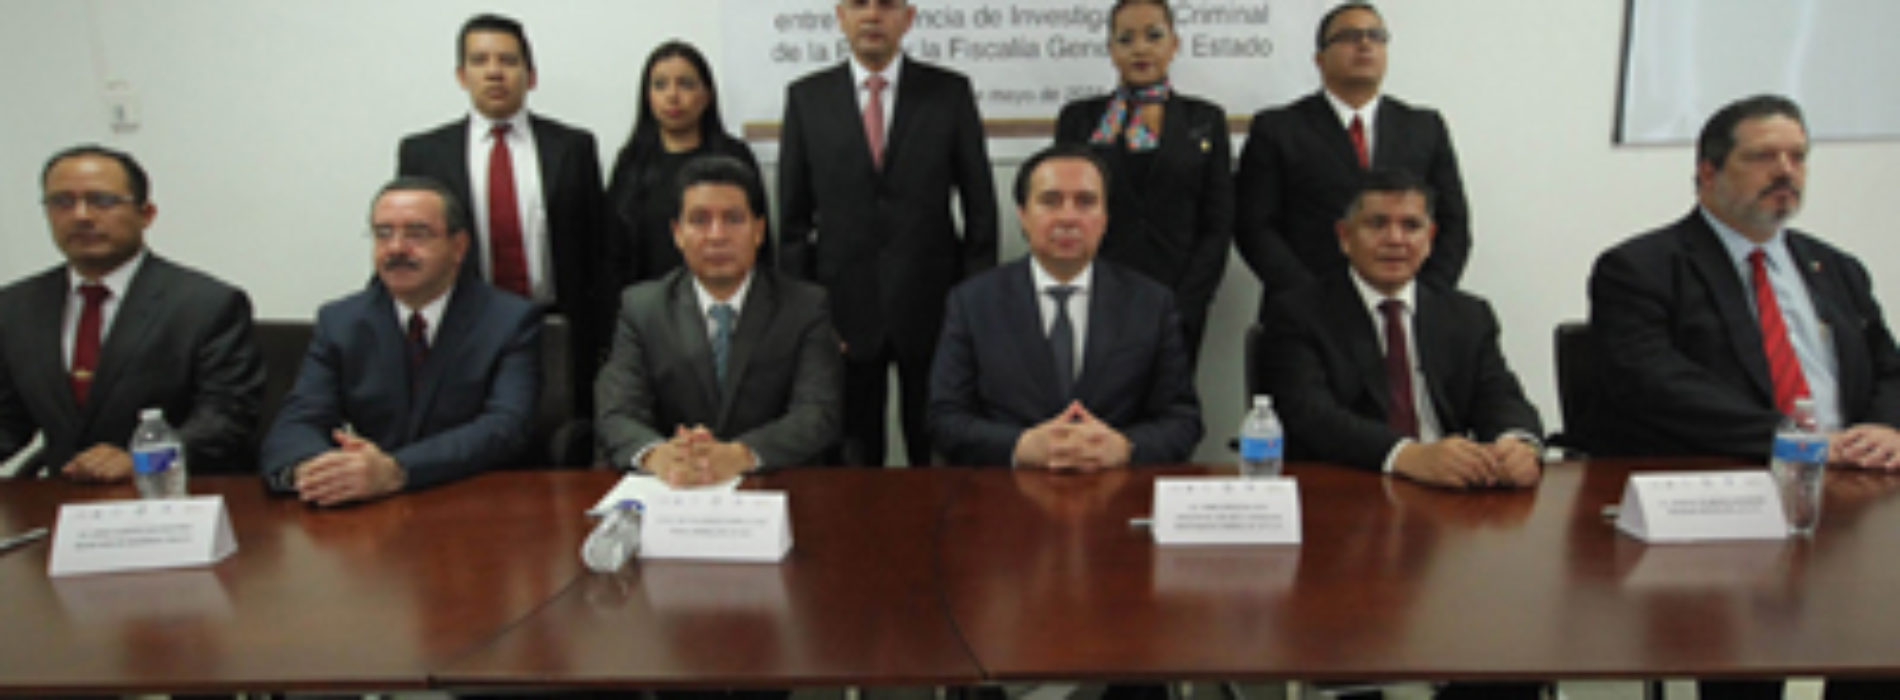 Gobierno de Oaxaca se adhiere a la Red de Análisis Criminalístico para fortalecer sistema de justicia en México: Gabino Cué